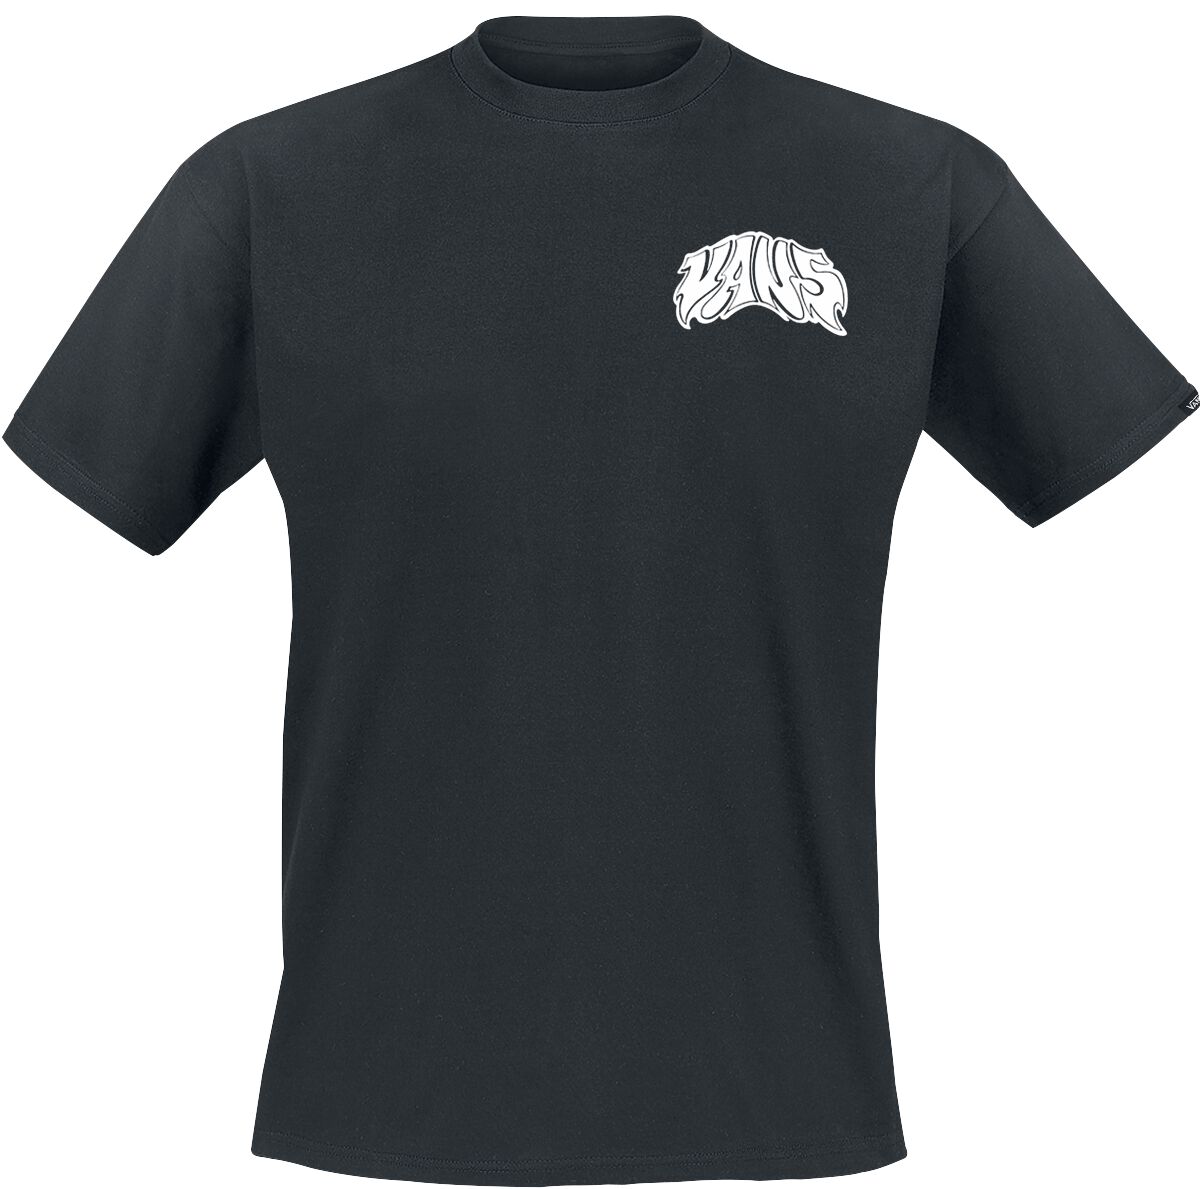 Vans T-Shirt - Prowler Tee - S bis XXL - für Männer - Größe L - schwarz